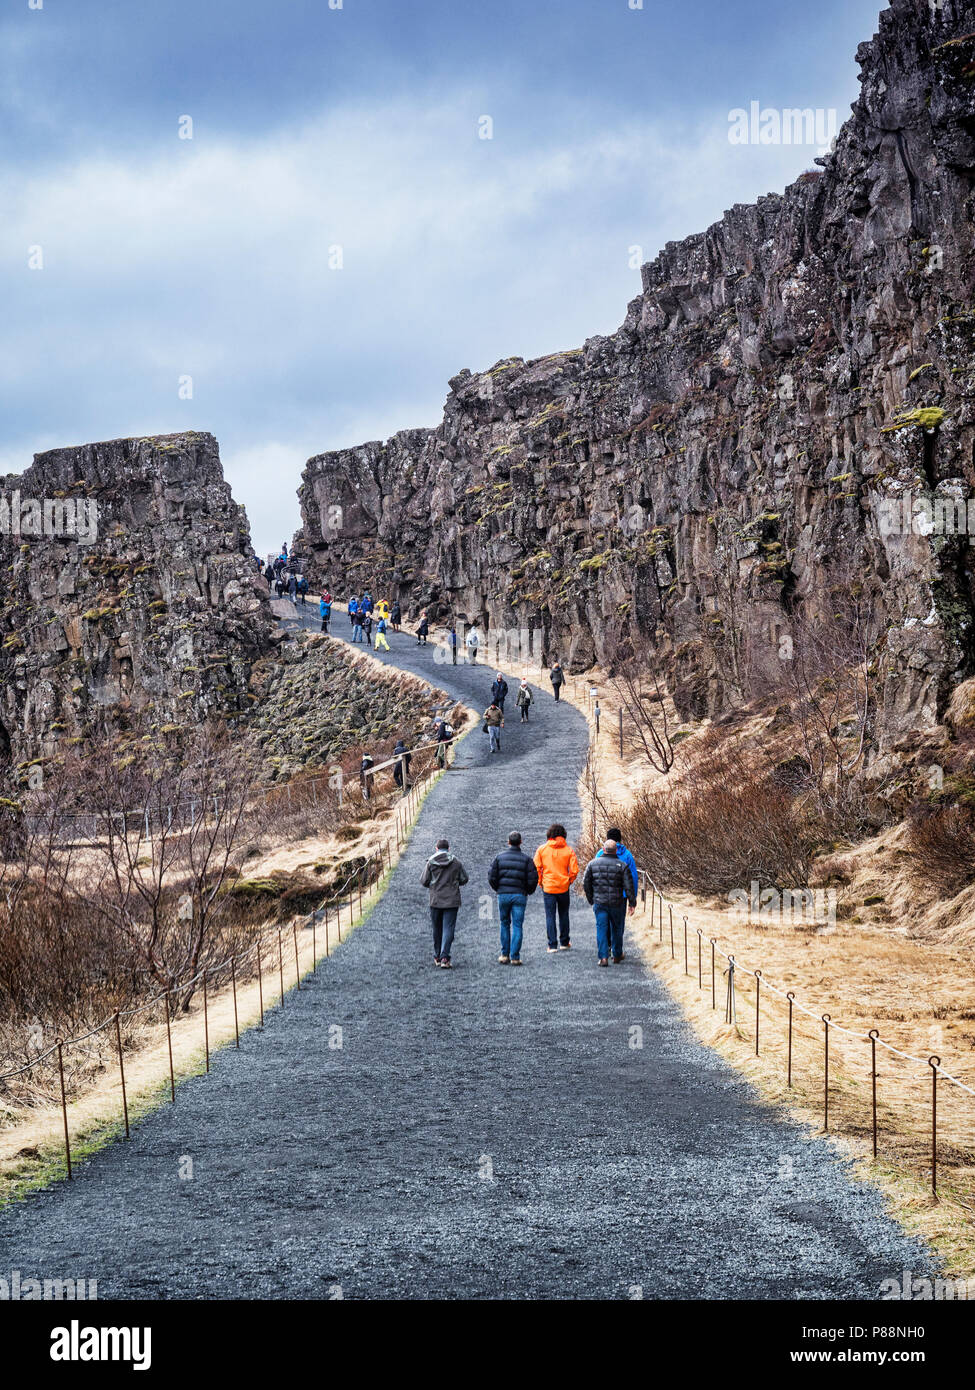 19 avril 2018 : le Parc National de Thingvellir, Islande - Visiteurs marche dans le Canyon Almannagja qui traverse ce parc national, l'un des principaux Banque D'Images